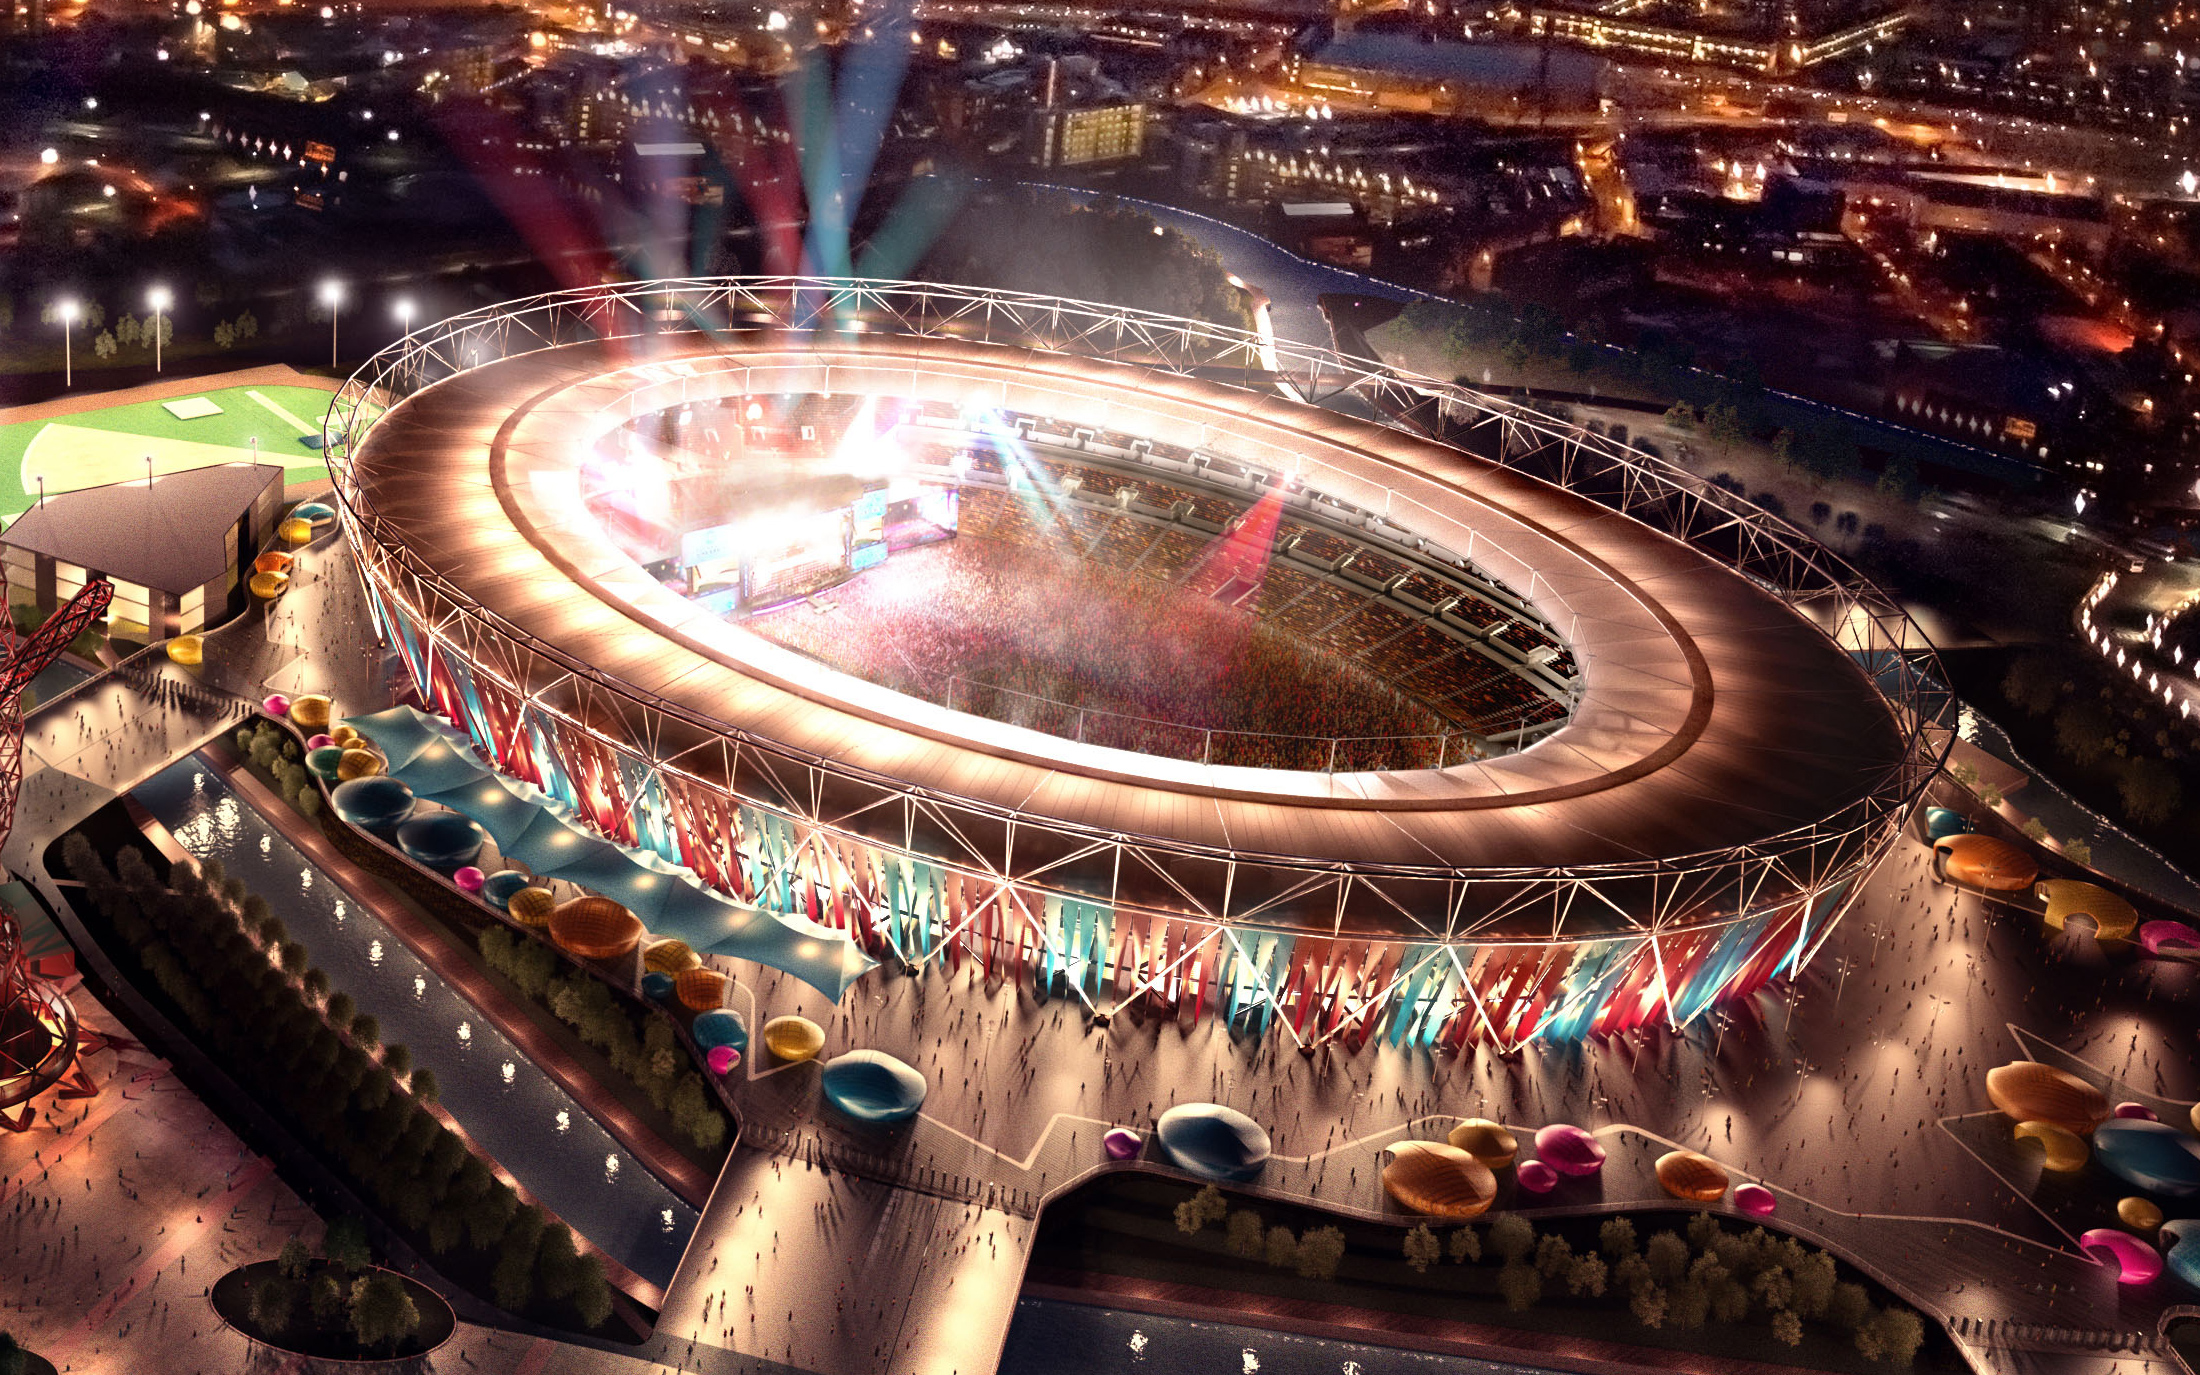 Khám phá không gian huyền thoại của đấu trường thi đấu Olympic 2012 tại London với bức tranh nền độc đáo. Với chất lượng hình ảnh đỉnh cao, bạn sẽ được trải nghiệm những khoảnh khắc đáng nhớ của điện hình thể thao lớn nhất thế giới.